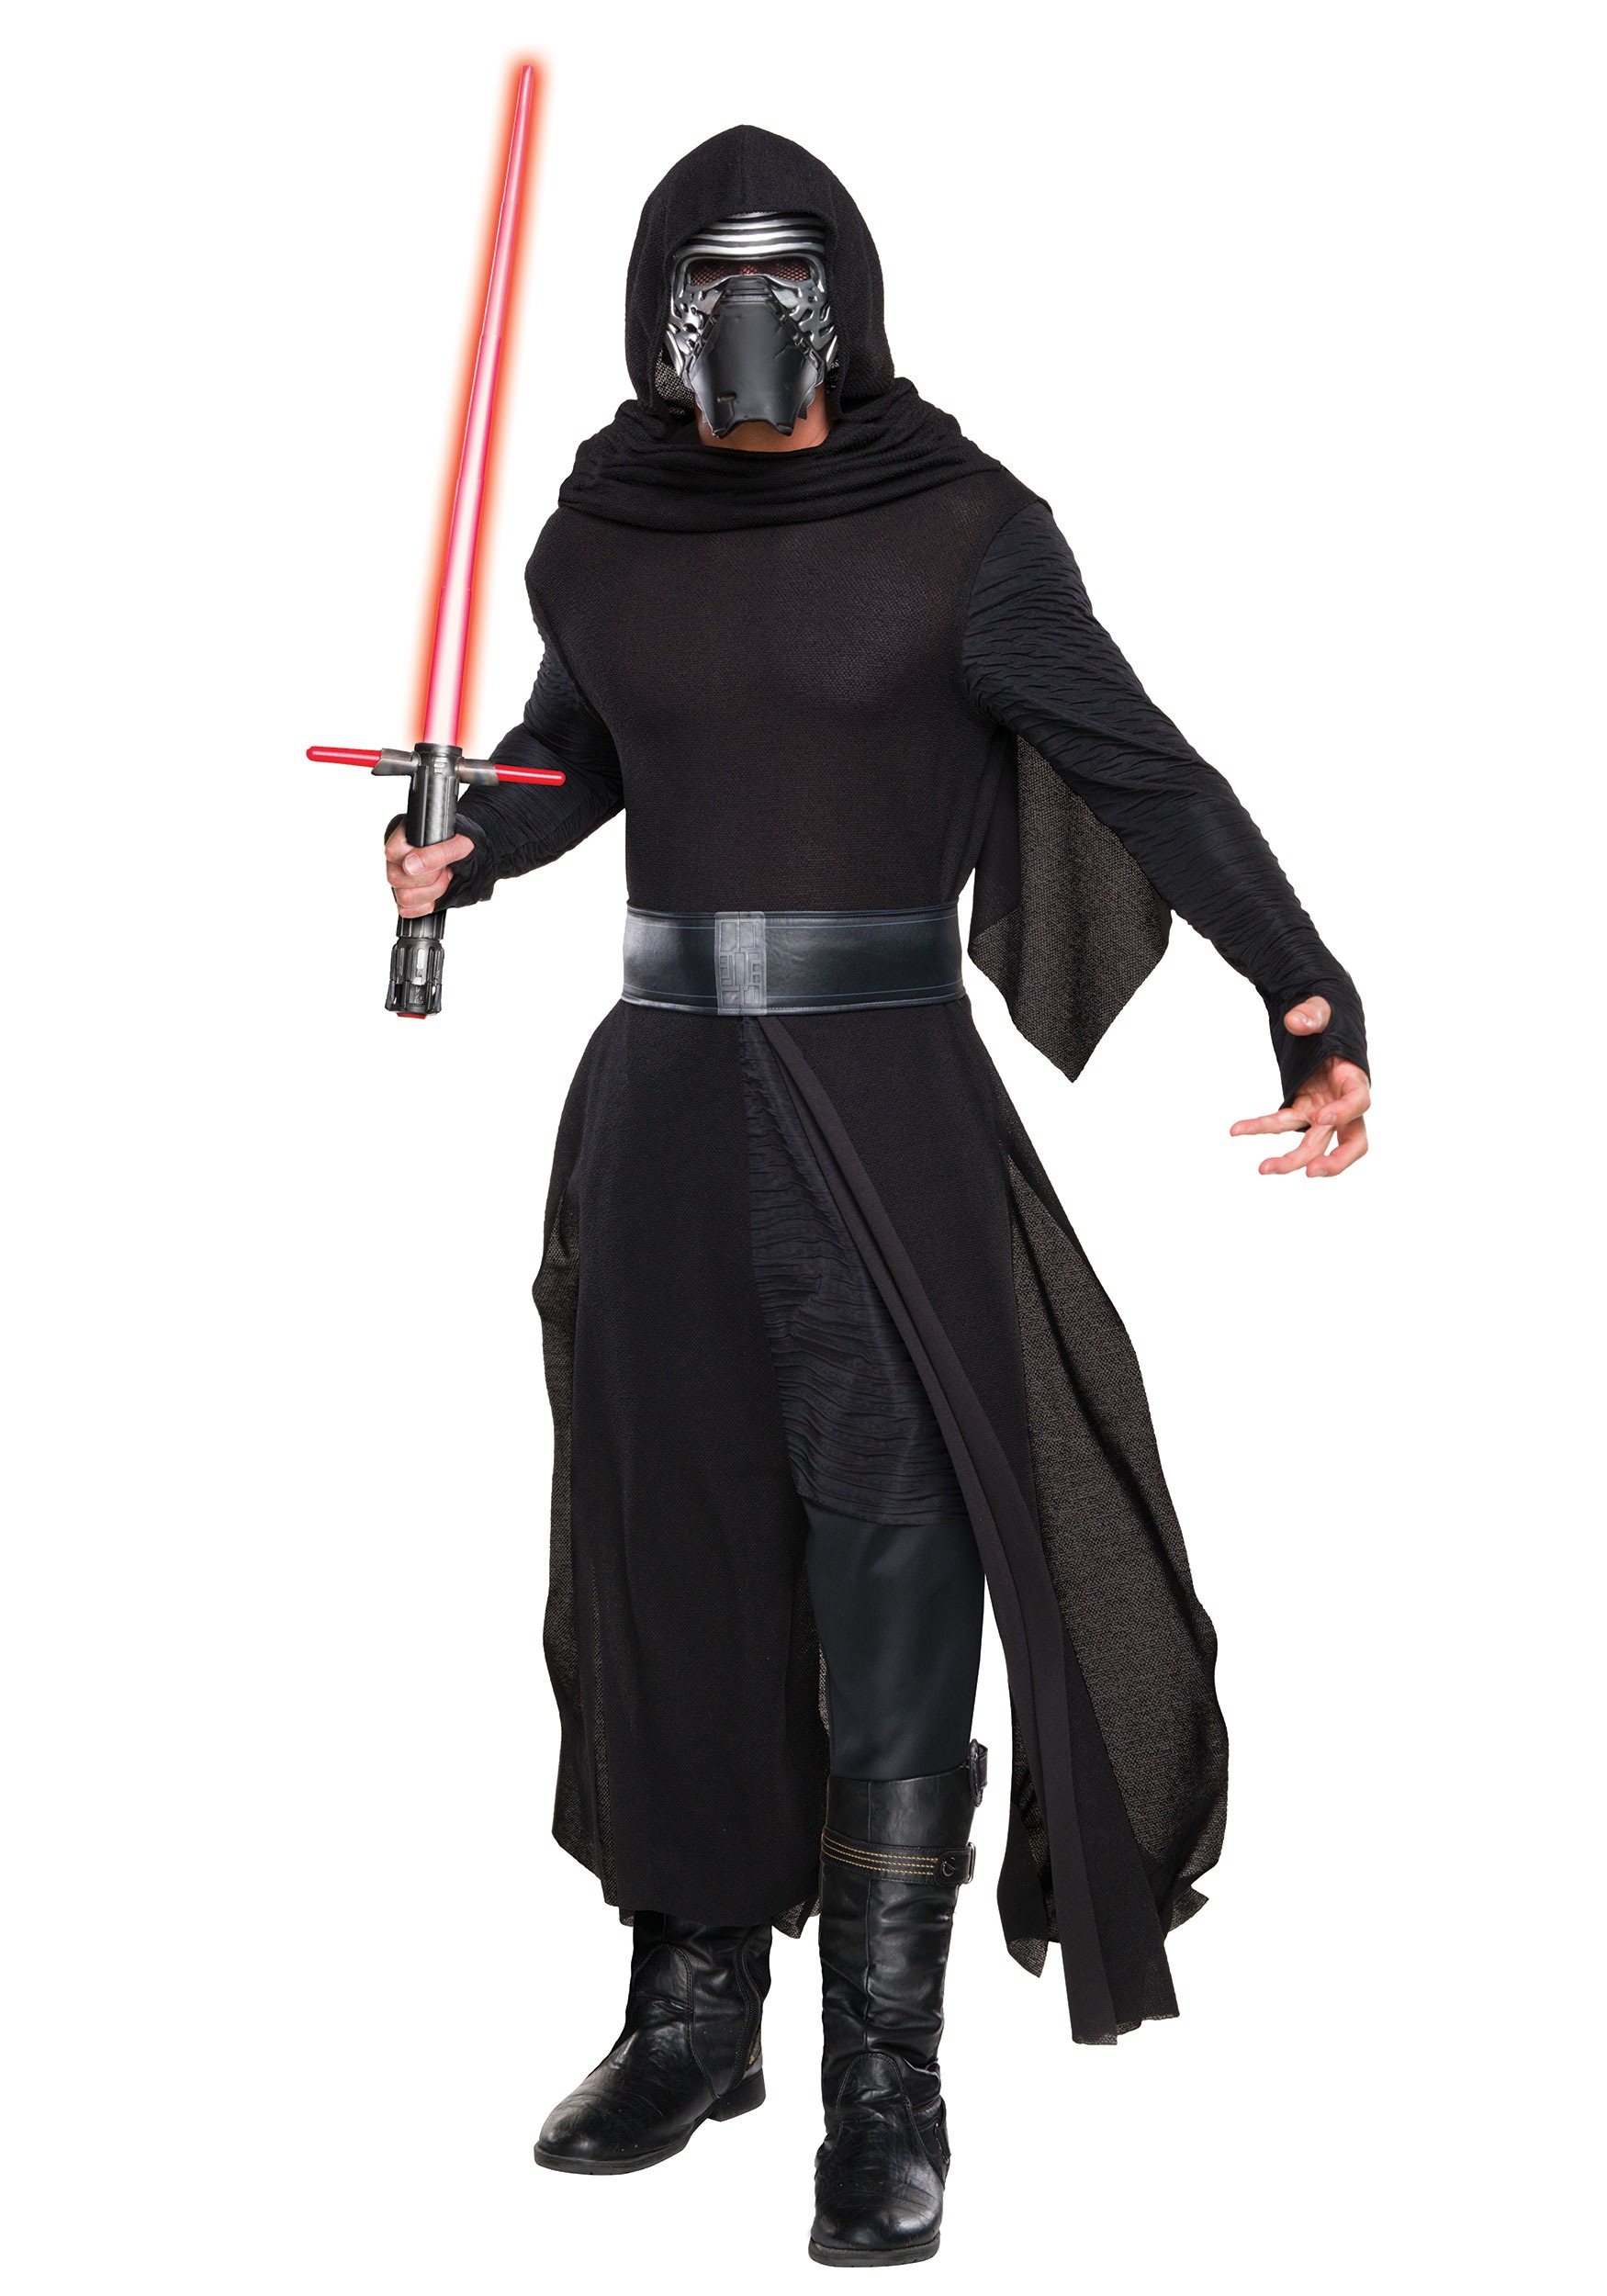 Adult Deluxe Star Wars The Force Awakens Kylo Ren Costume